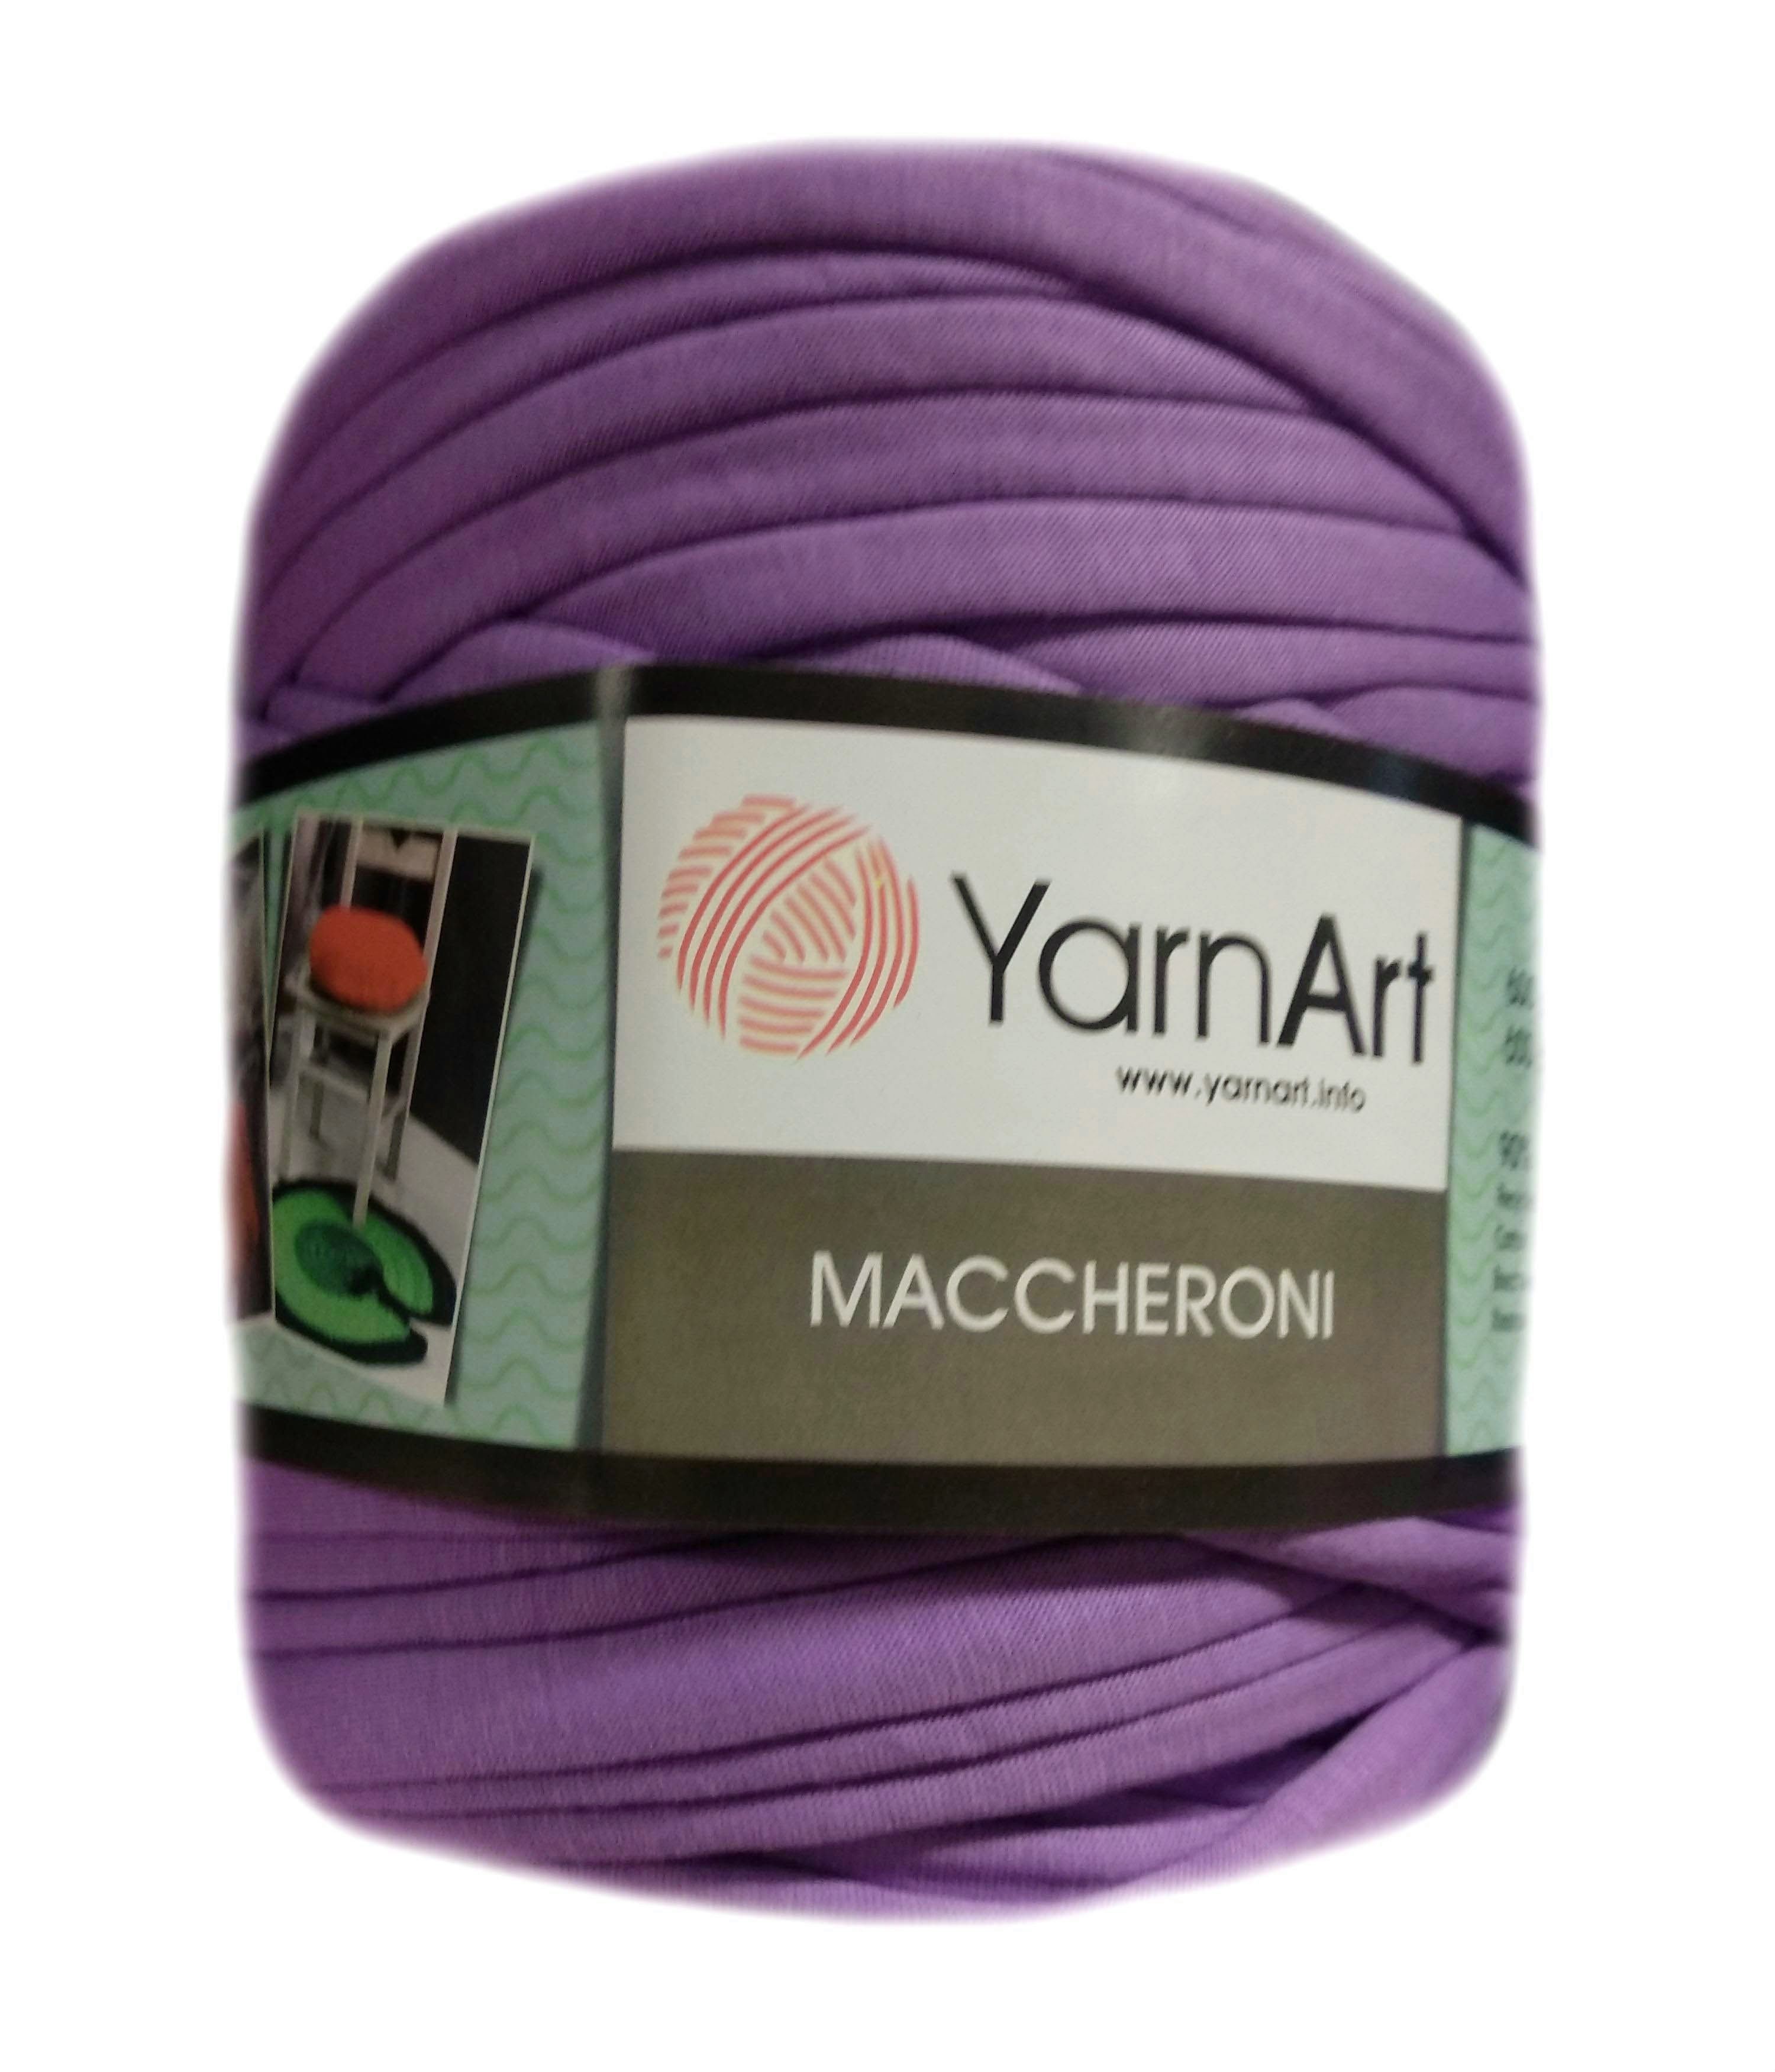 YarnArt MACCHERONI, élénk lila póló fonal.Tű 12-15 mm.